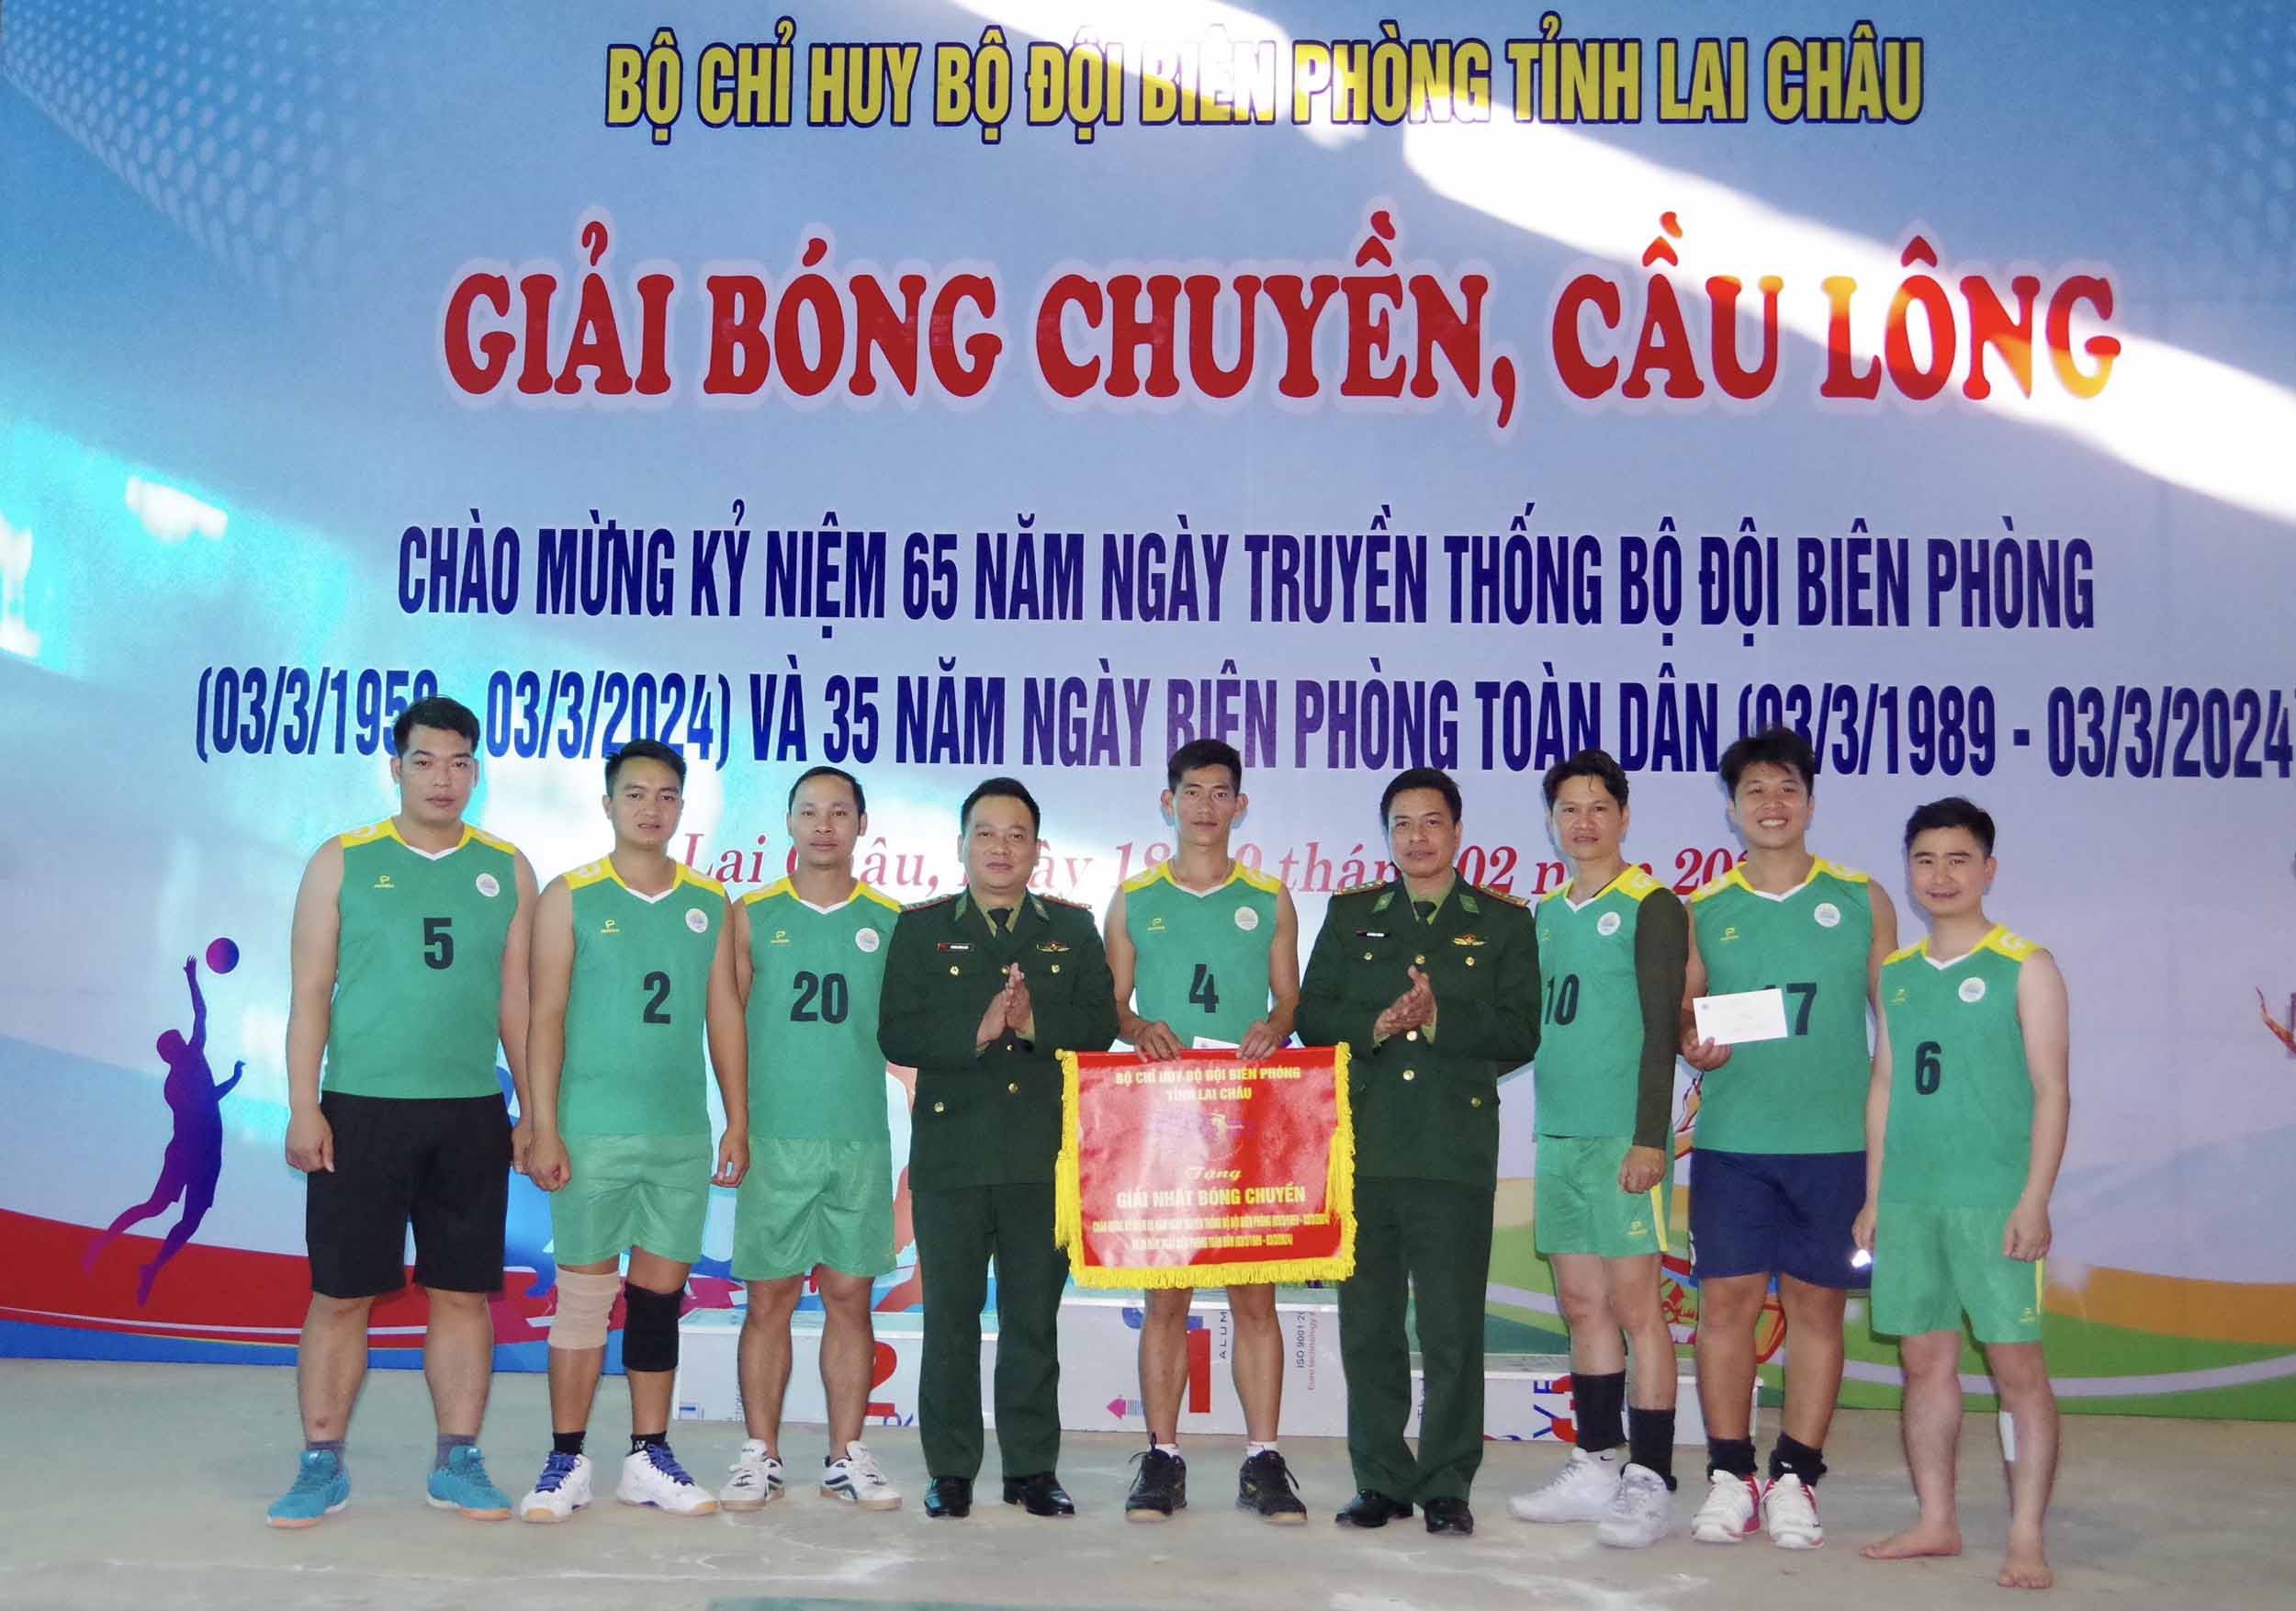 Lãnh đạo Bộ Chỉ huy BĐBP tỉnh trao giải nhất môn bóng chuyền cho đội Khối cơ quan Bộ Chỉ huy BĐBP tỉnh.